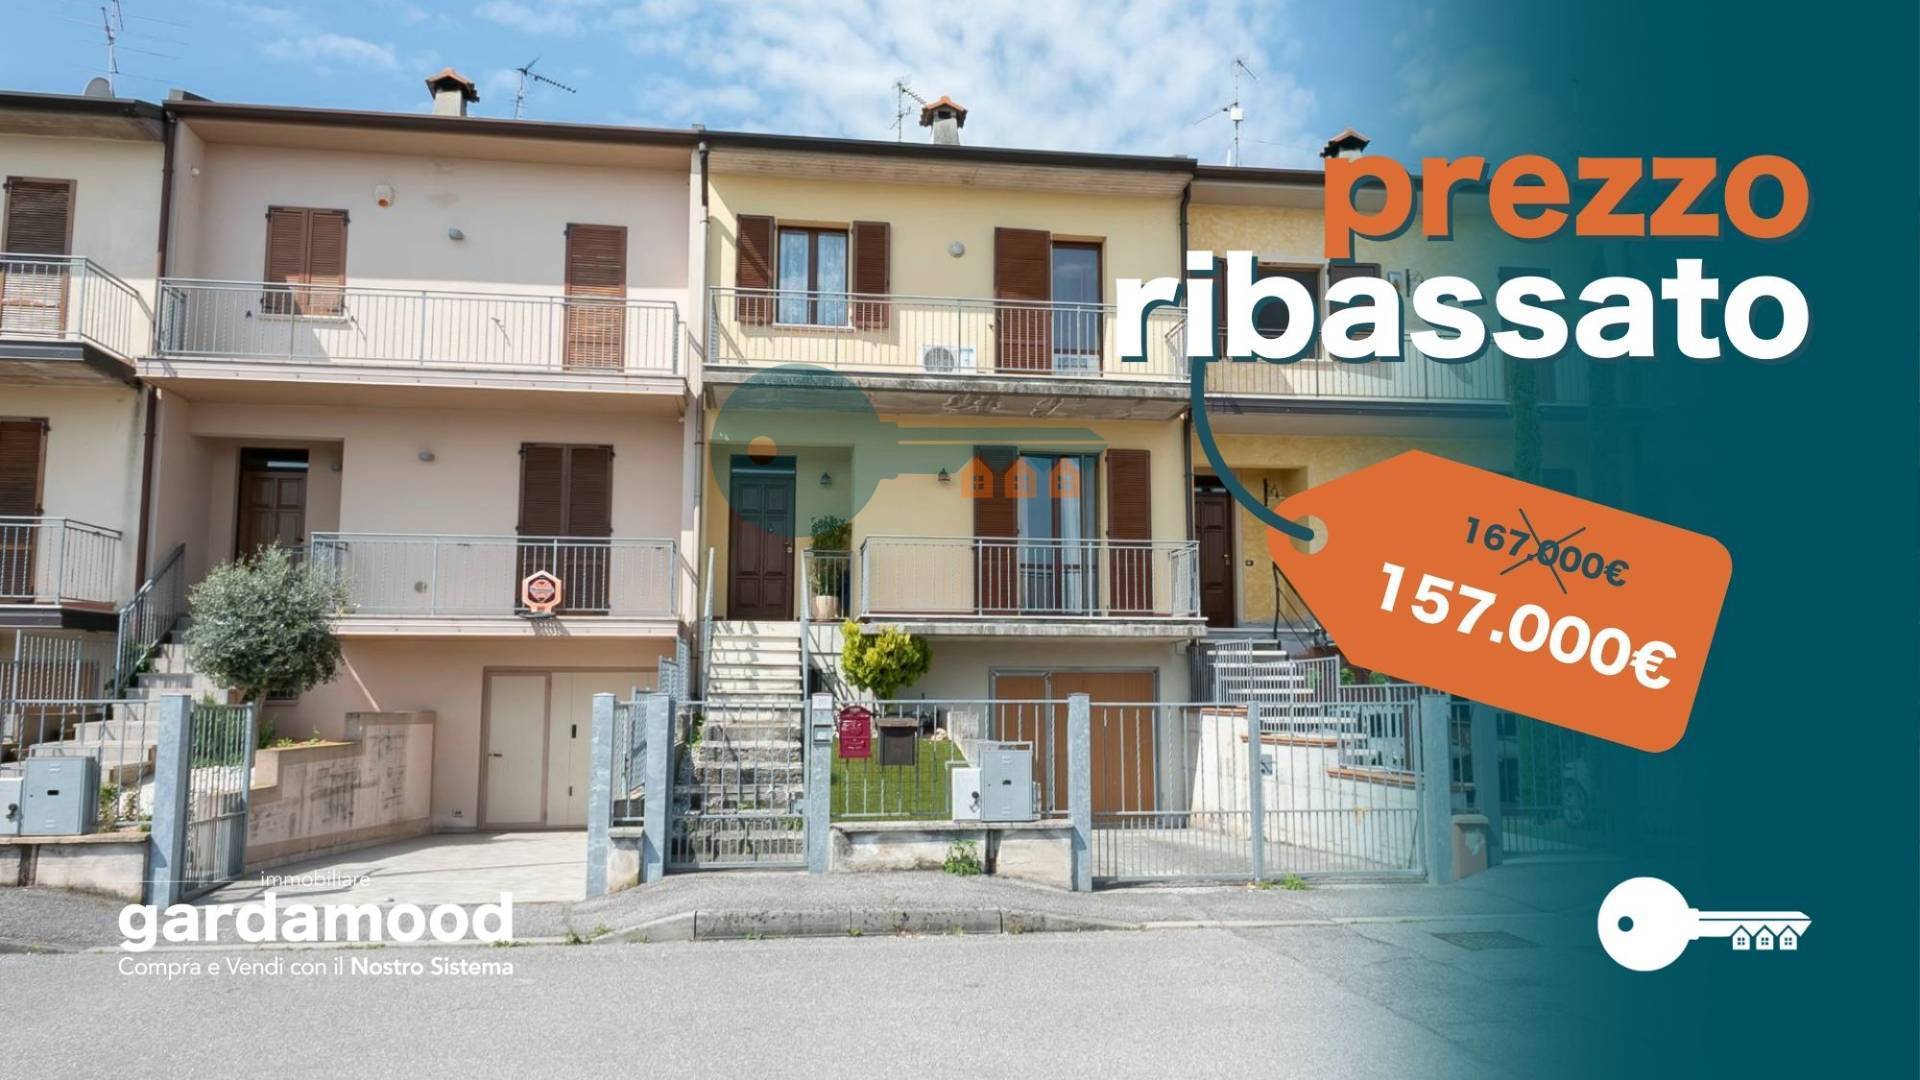 Villa a Schiera in vendita a Calvisano, 7 locali, prezzo € 157.000 | PortaleAgenzieImmobiliari.it